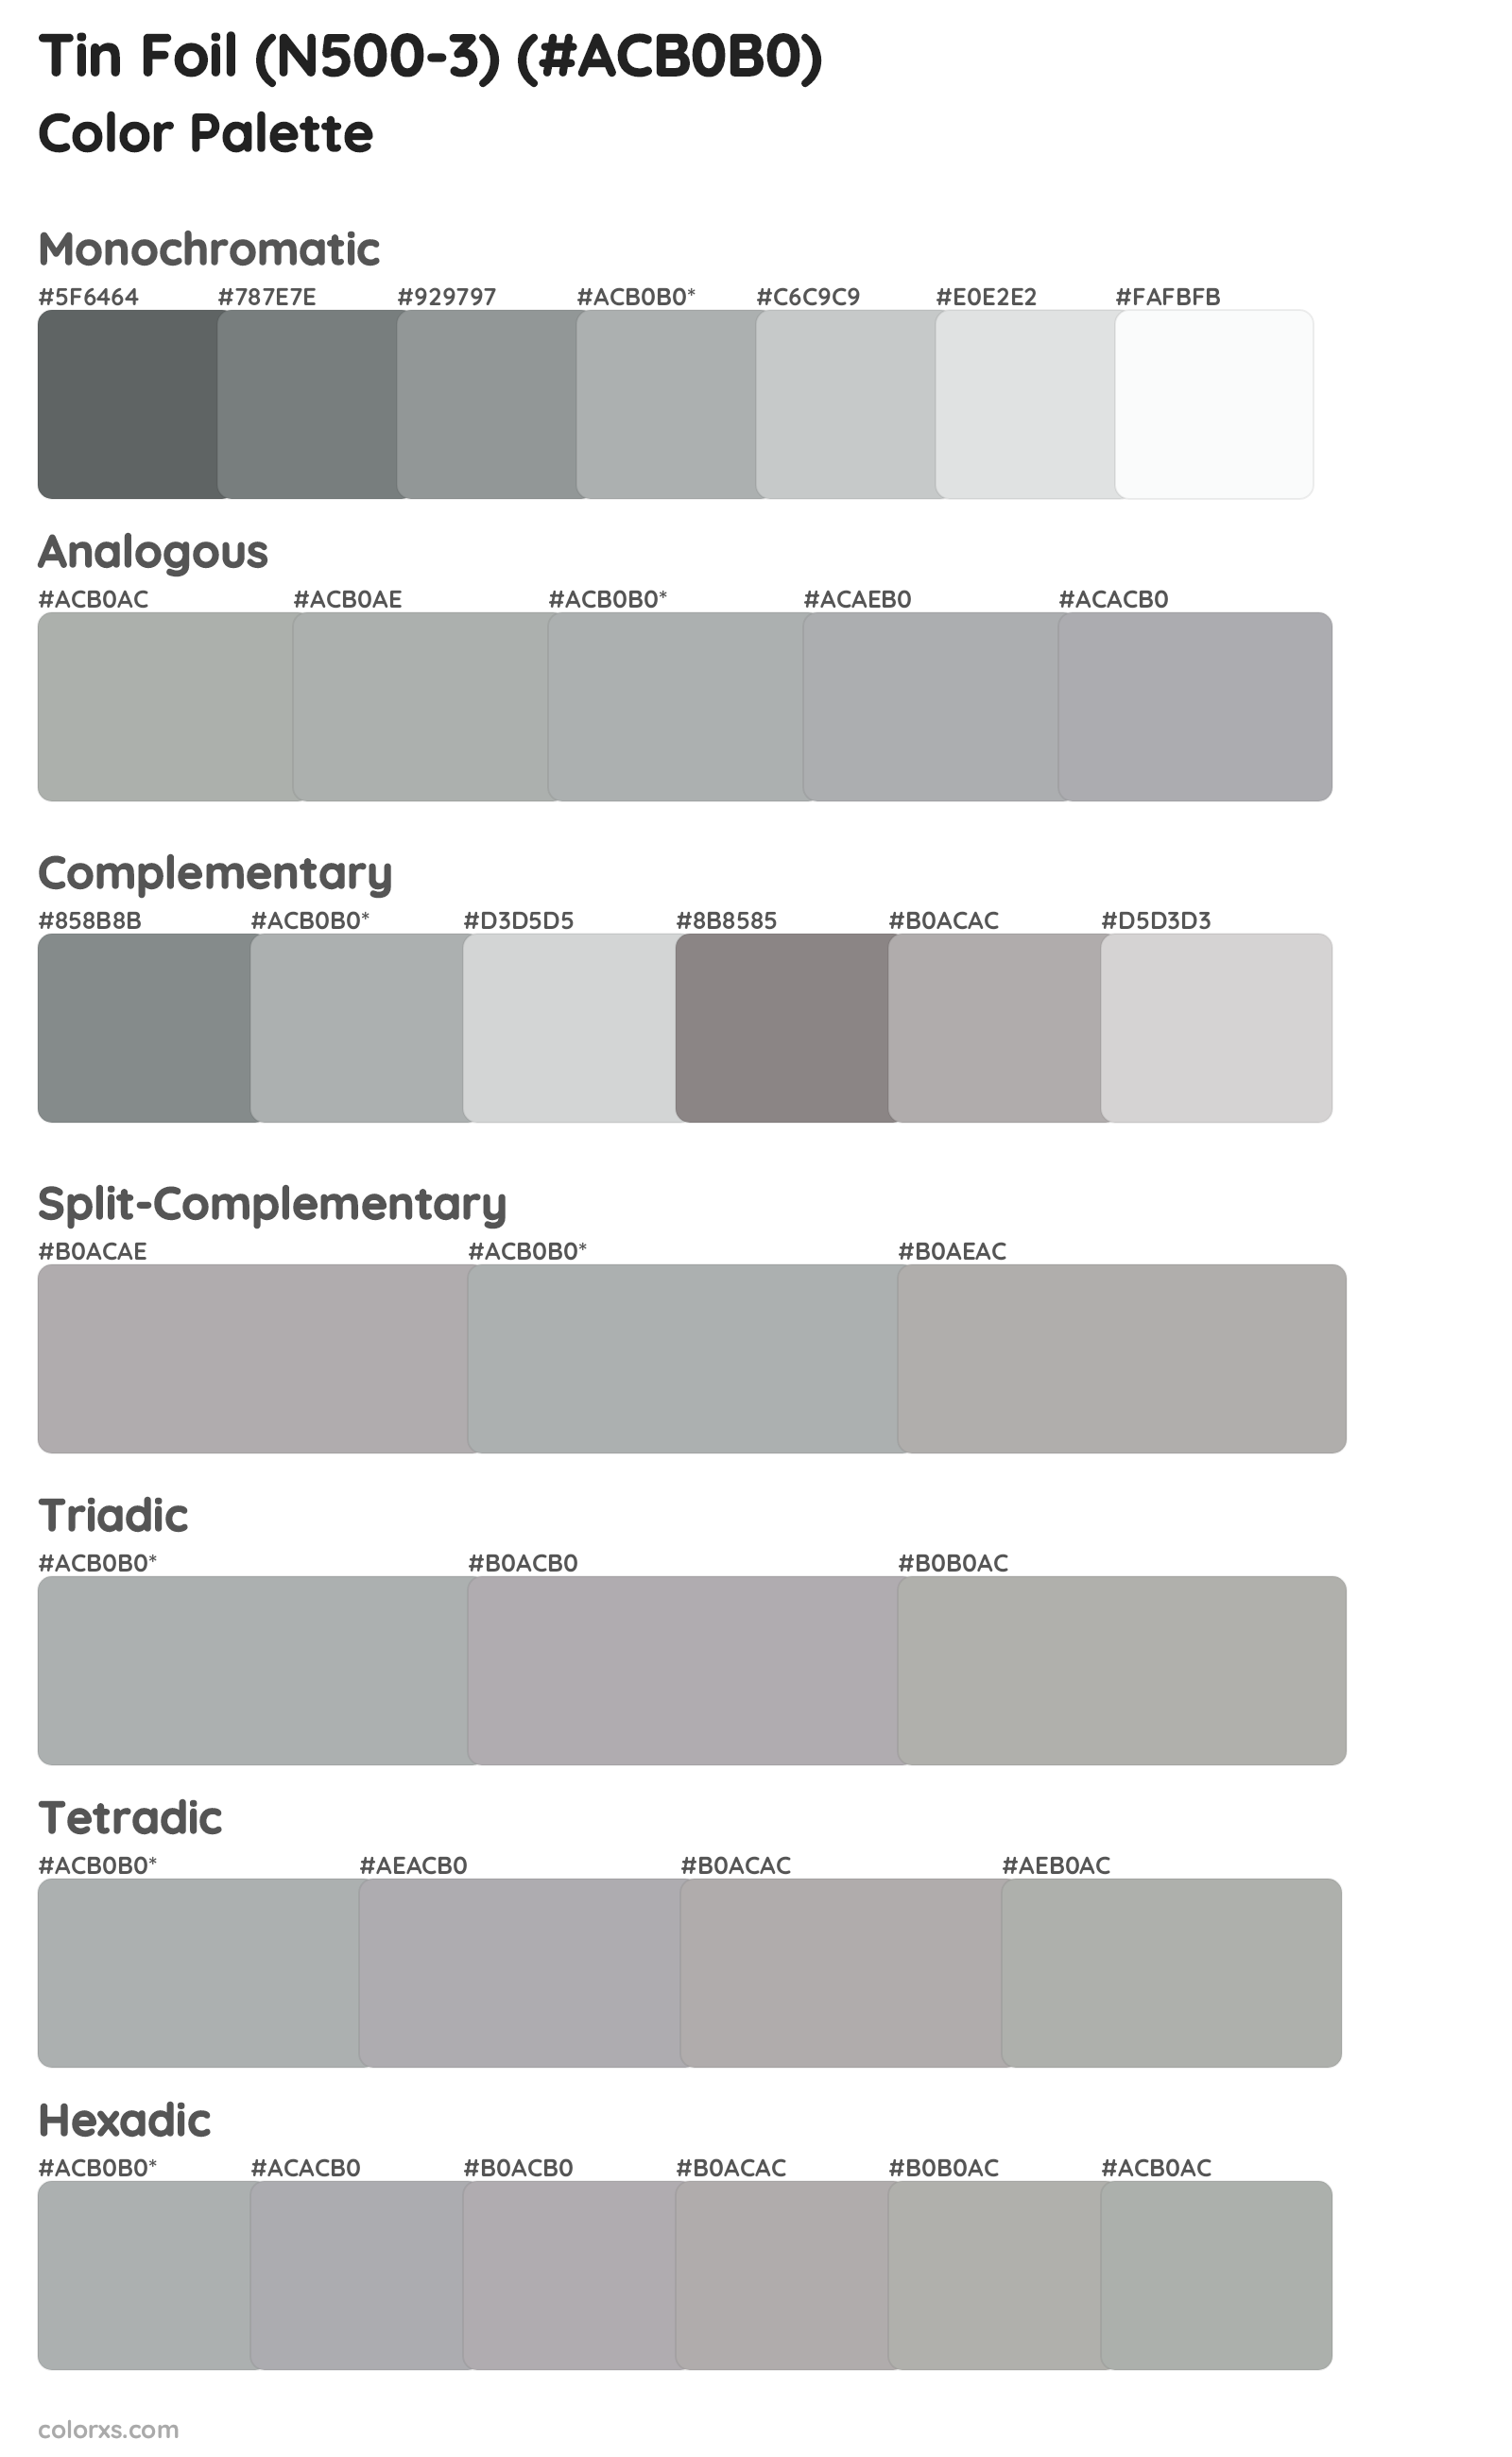 Tin Foil (N500-3) Color Scheme Palettes